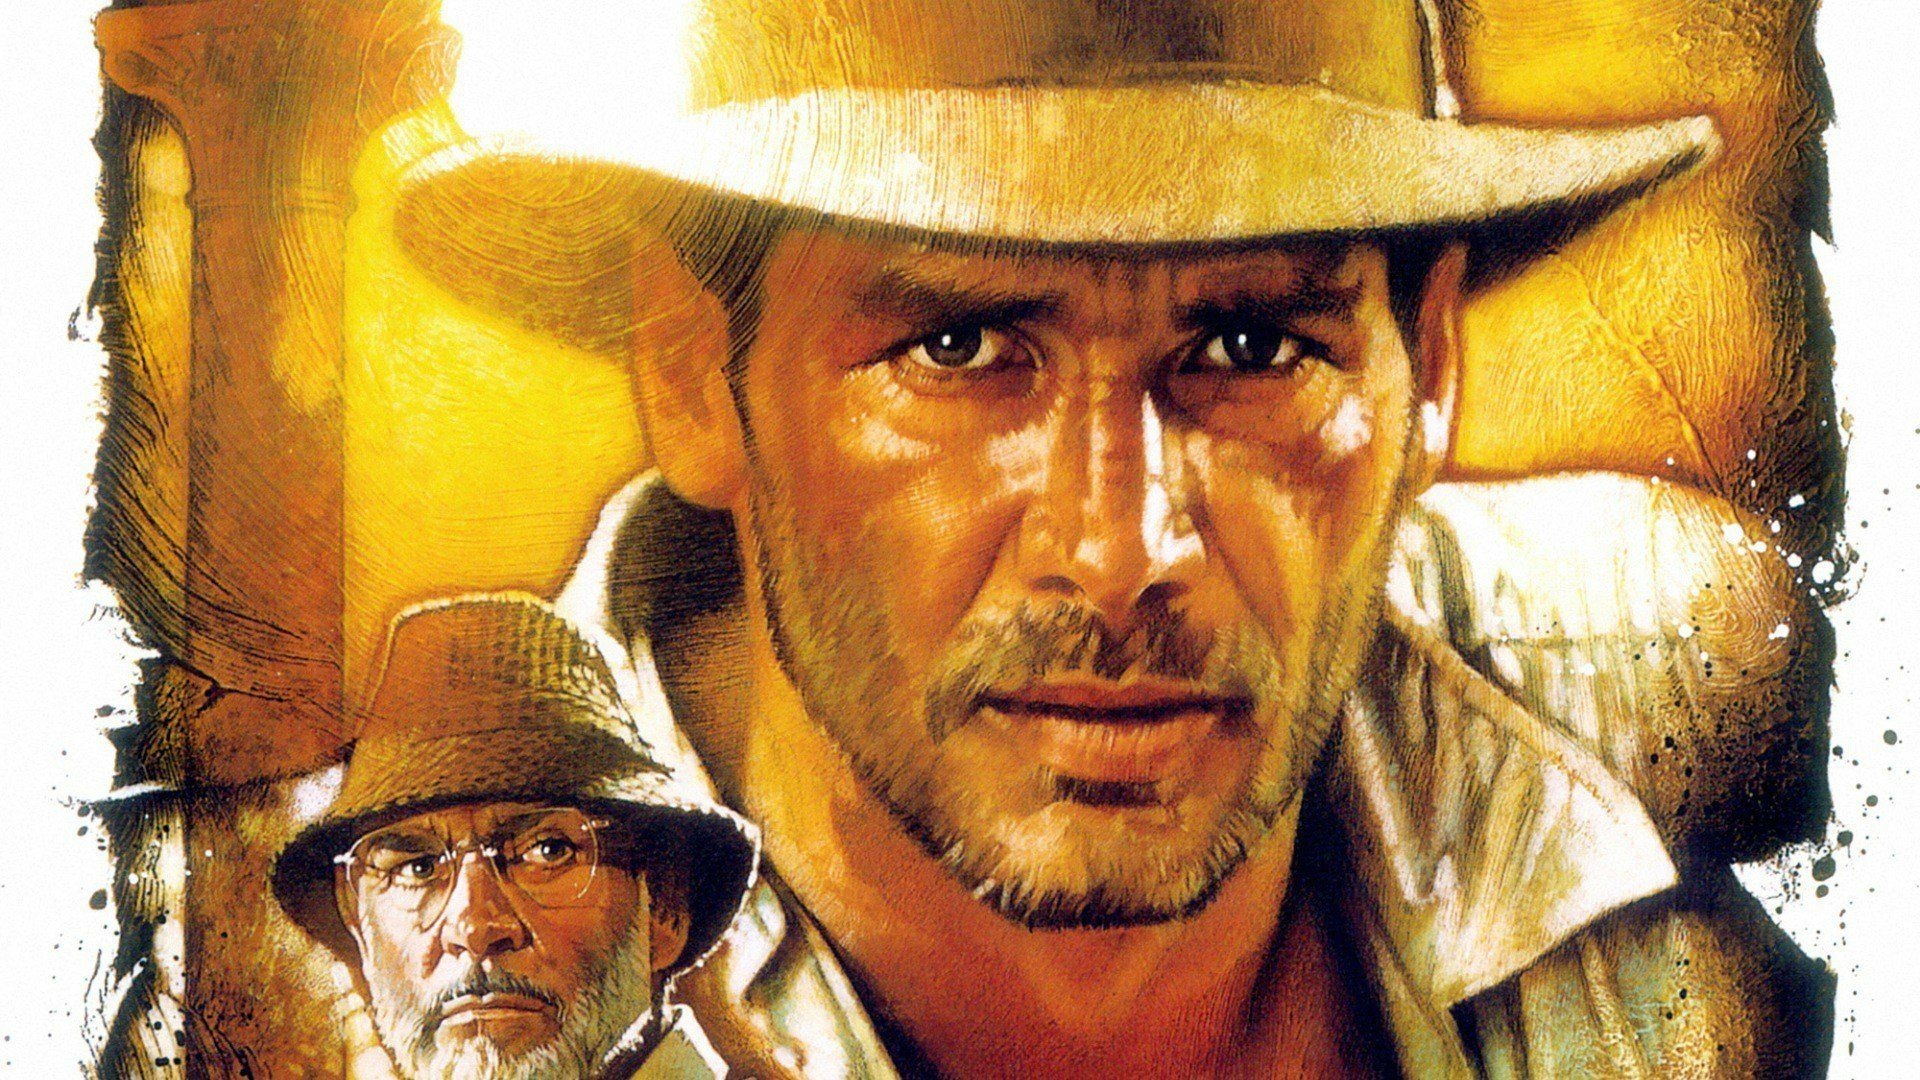 Indiana Jones Hd Wallpapers